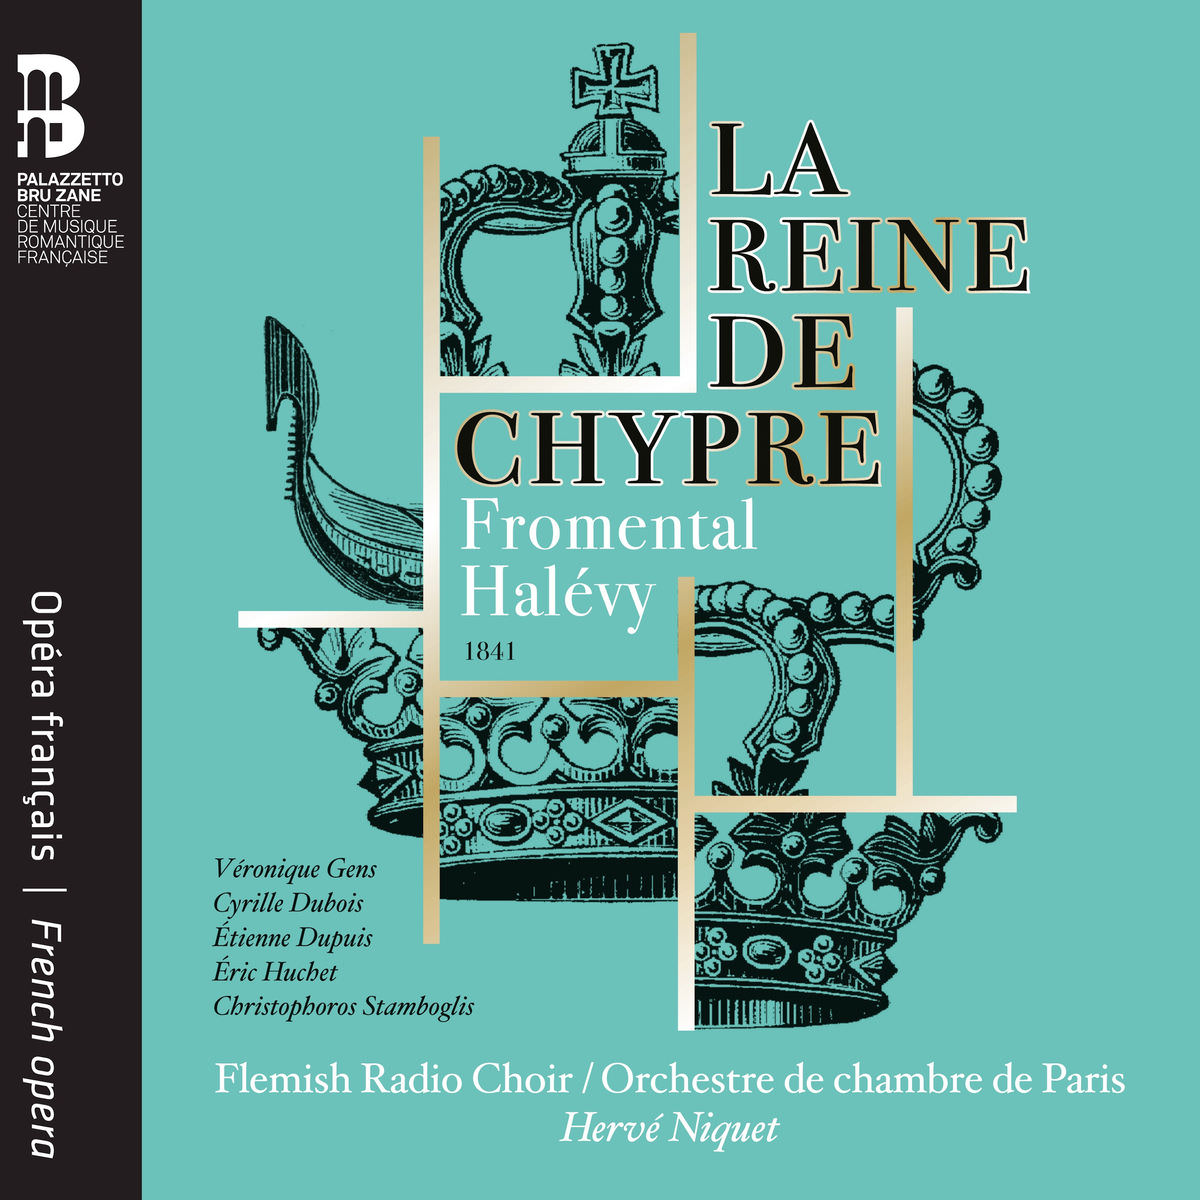 Orchestre de chambre de Paris, Herve Niquet & Flemish Radio Choir - Halevy: La Reine de Chypre (2018) [FLAC 24bit/88,2kHz]